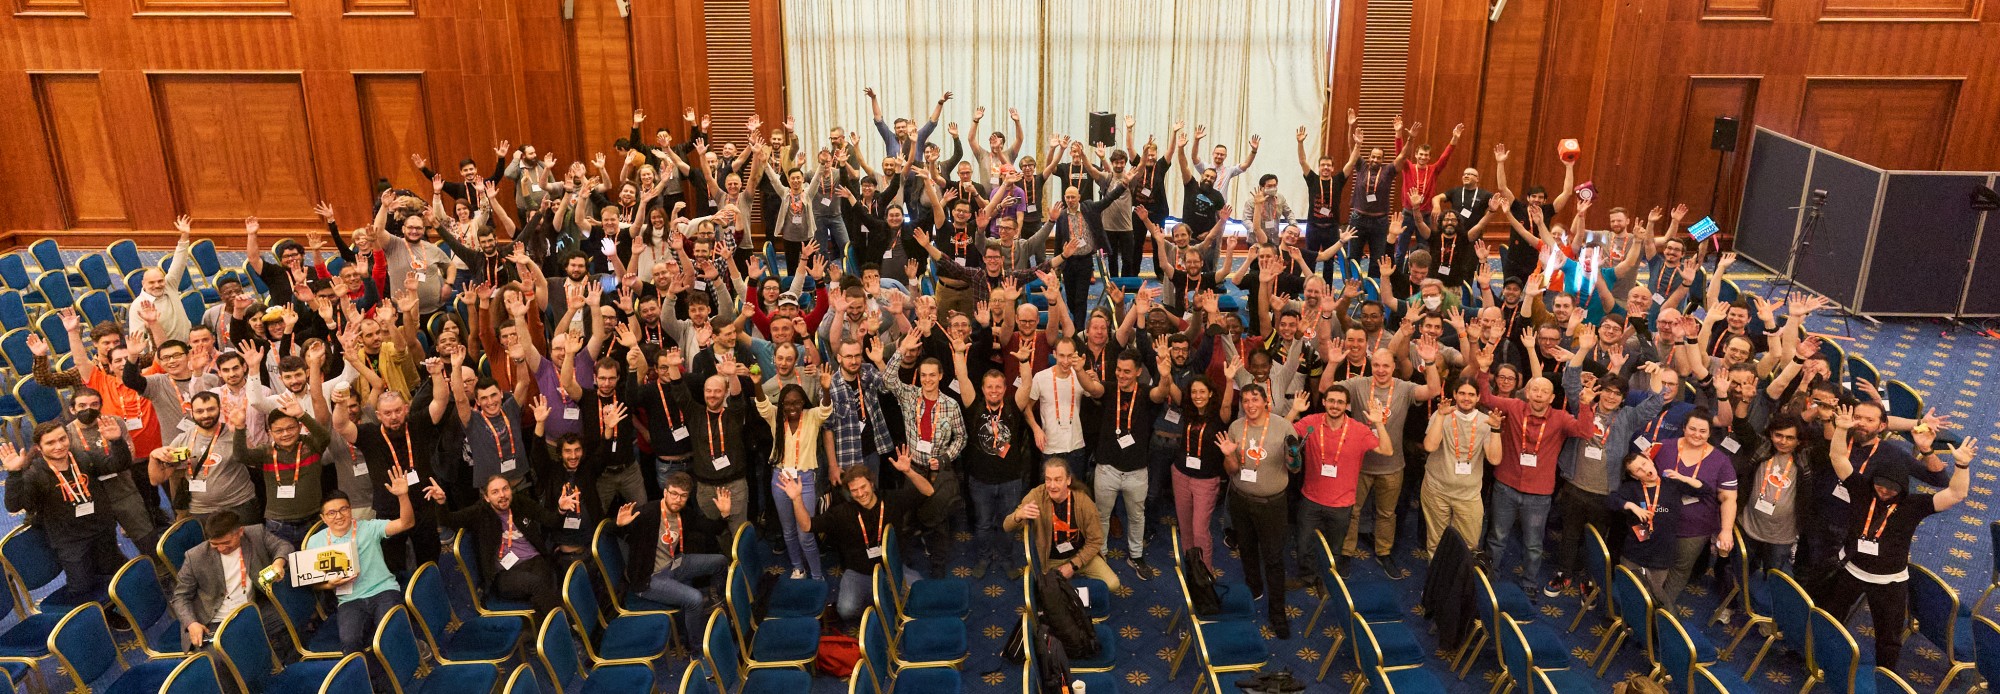 Ubuntu Summit group photo.